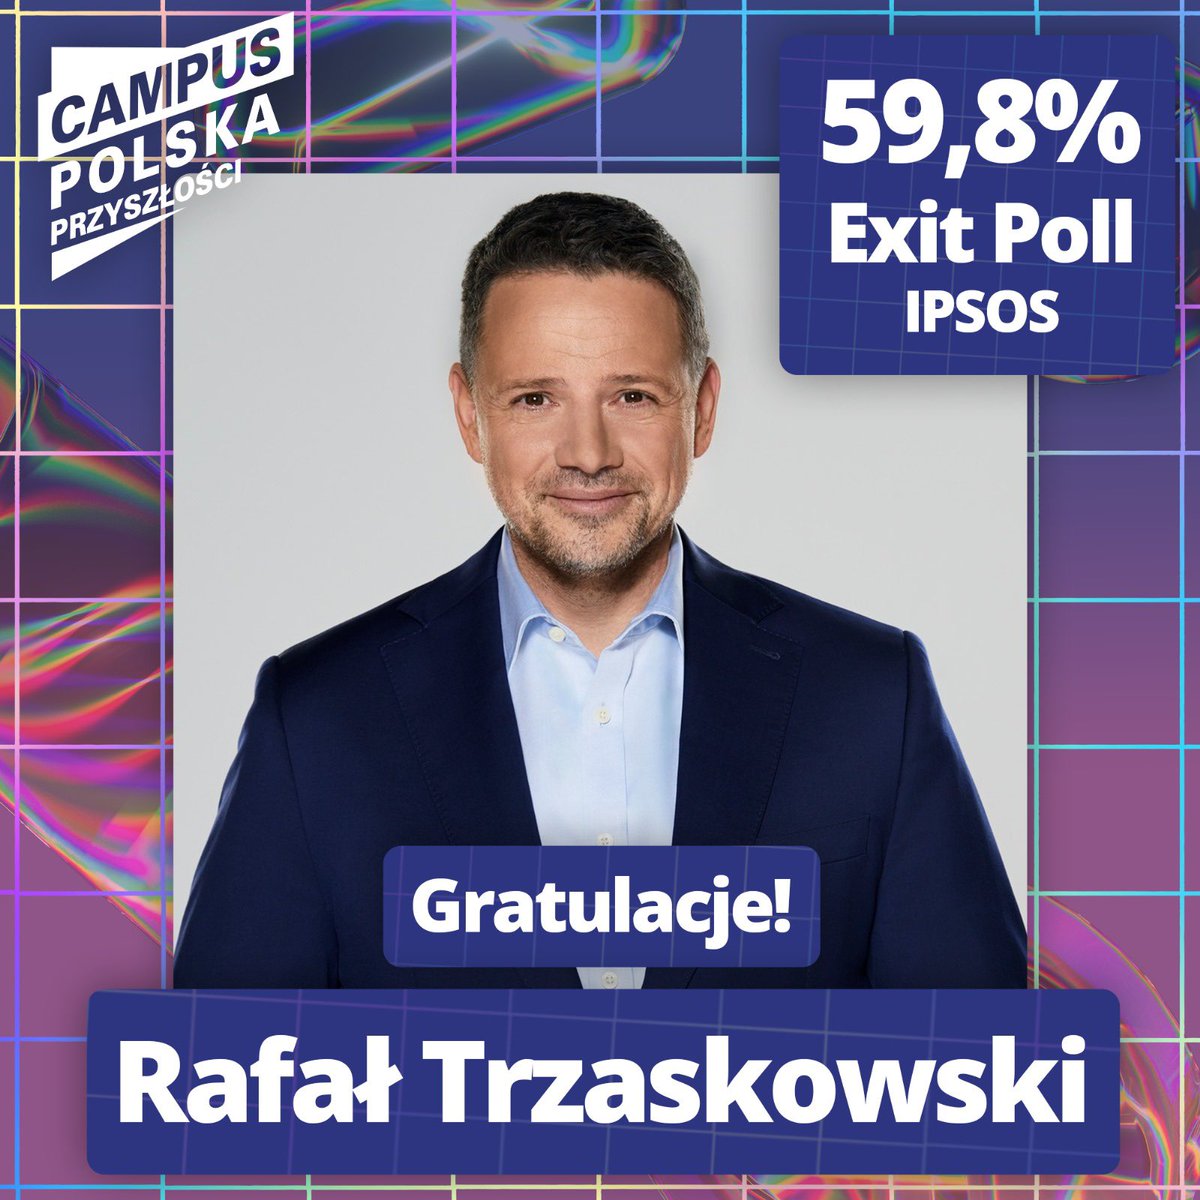 Ogromne gratulacje dla @trzaskowski_! Współorganizator Campusu Polska Przyszłości wygrywa wybory prezydenckie w Warszawie w I turze!